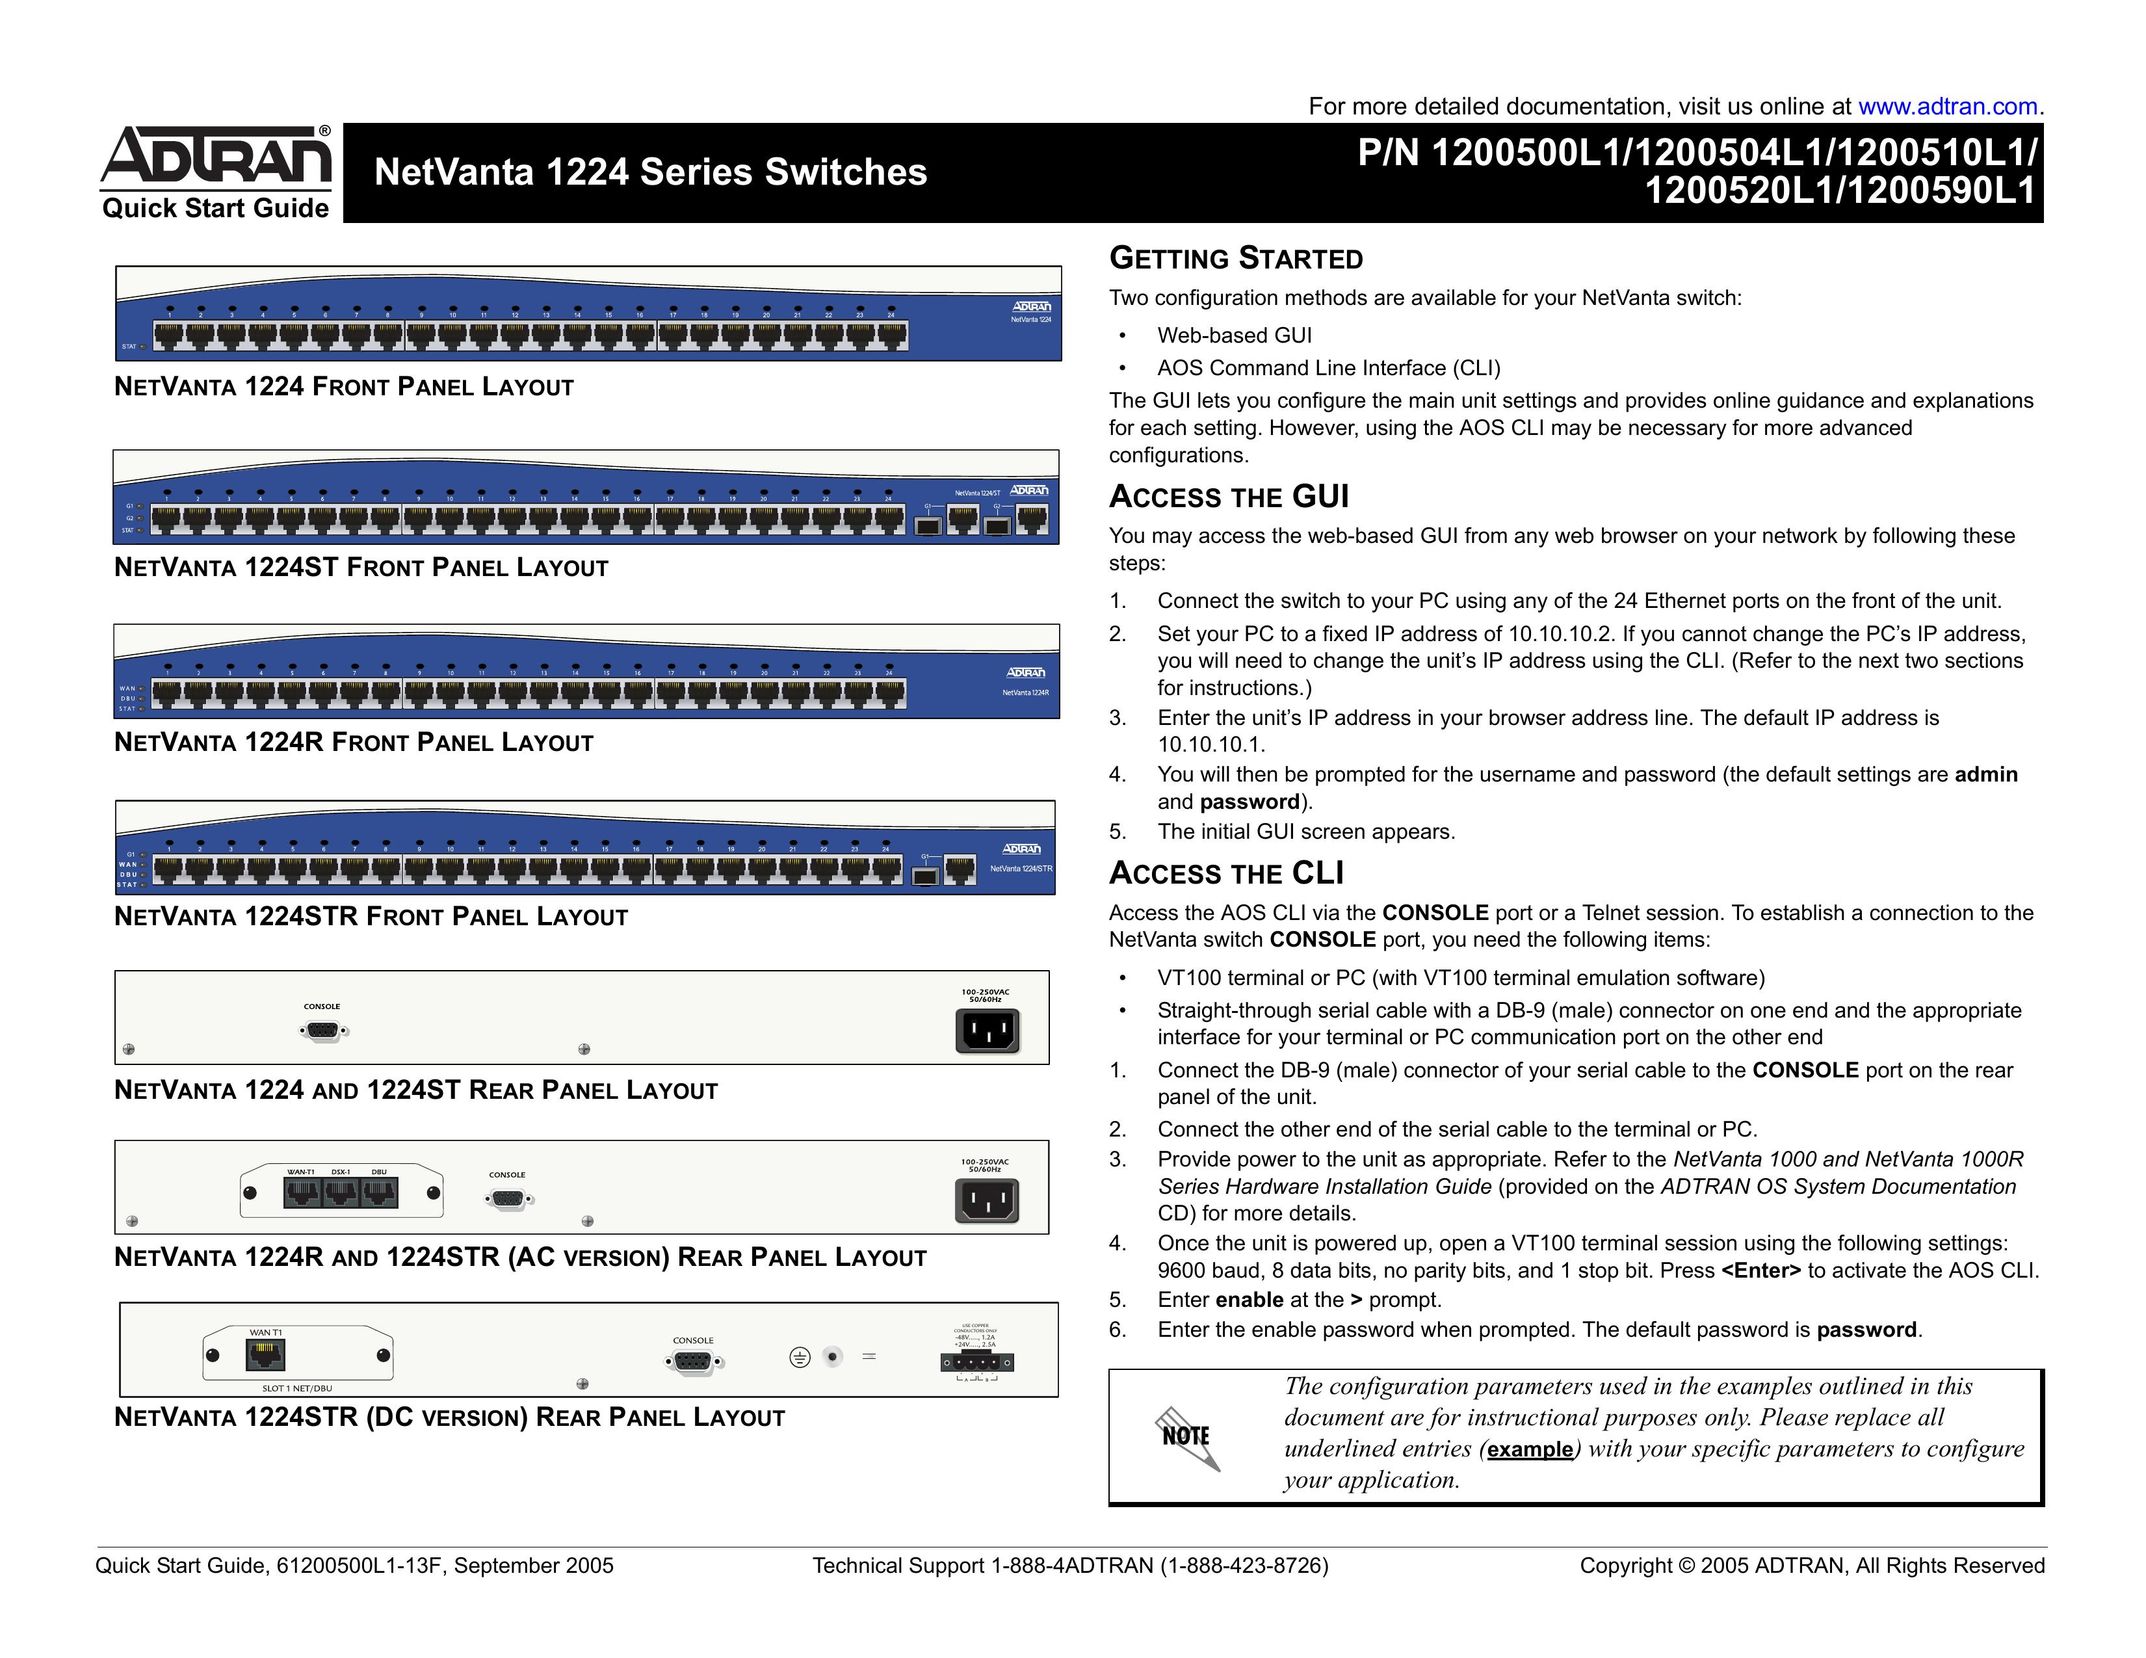 ADTRAN 1224 Switch User Manual